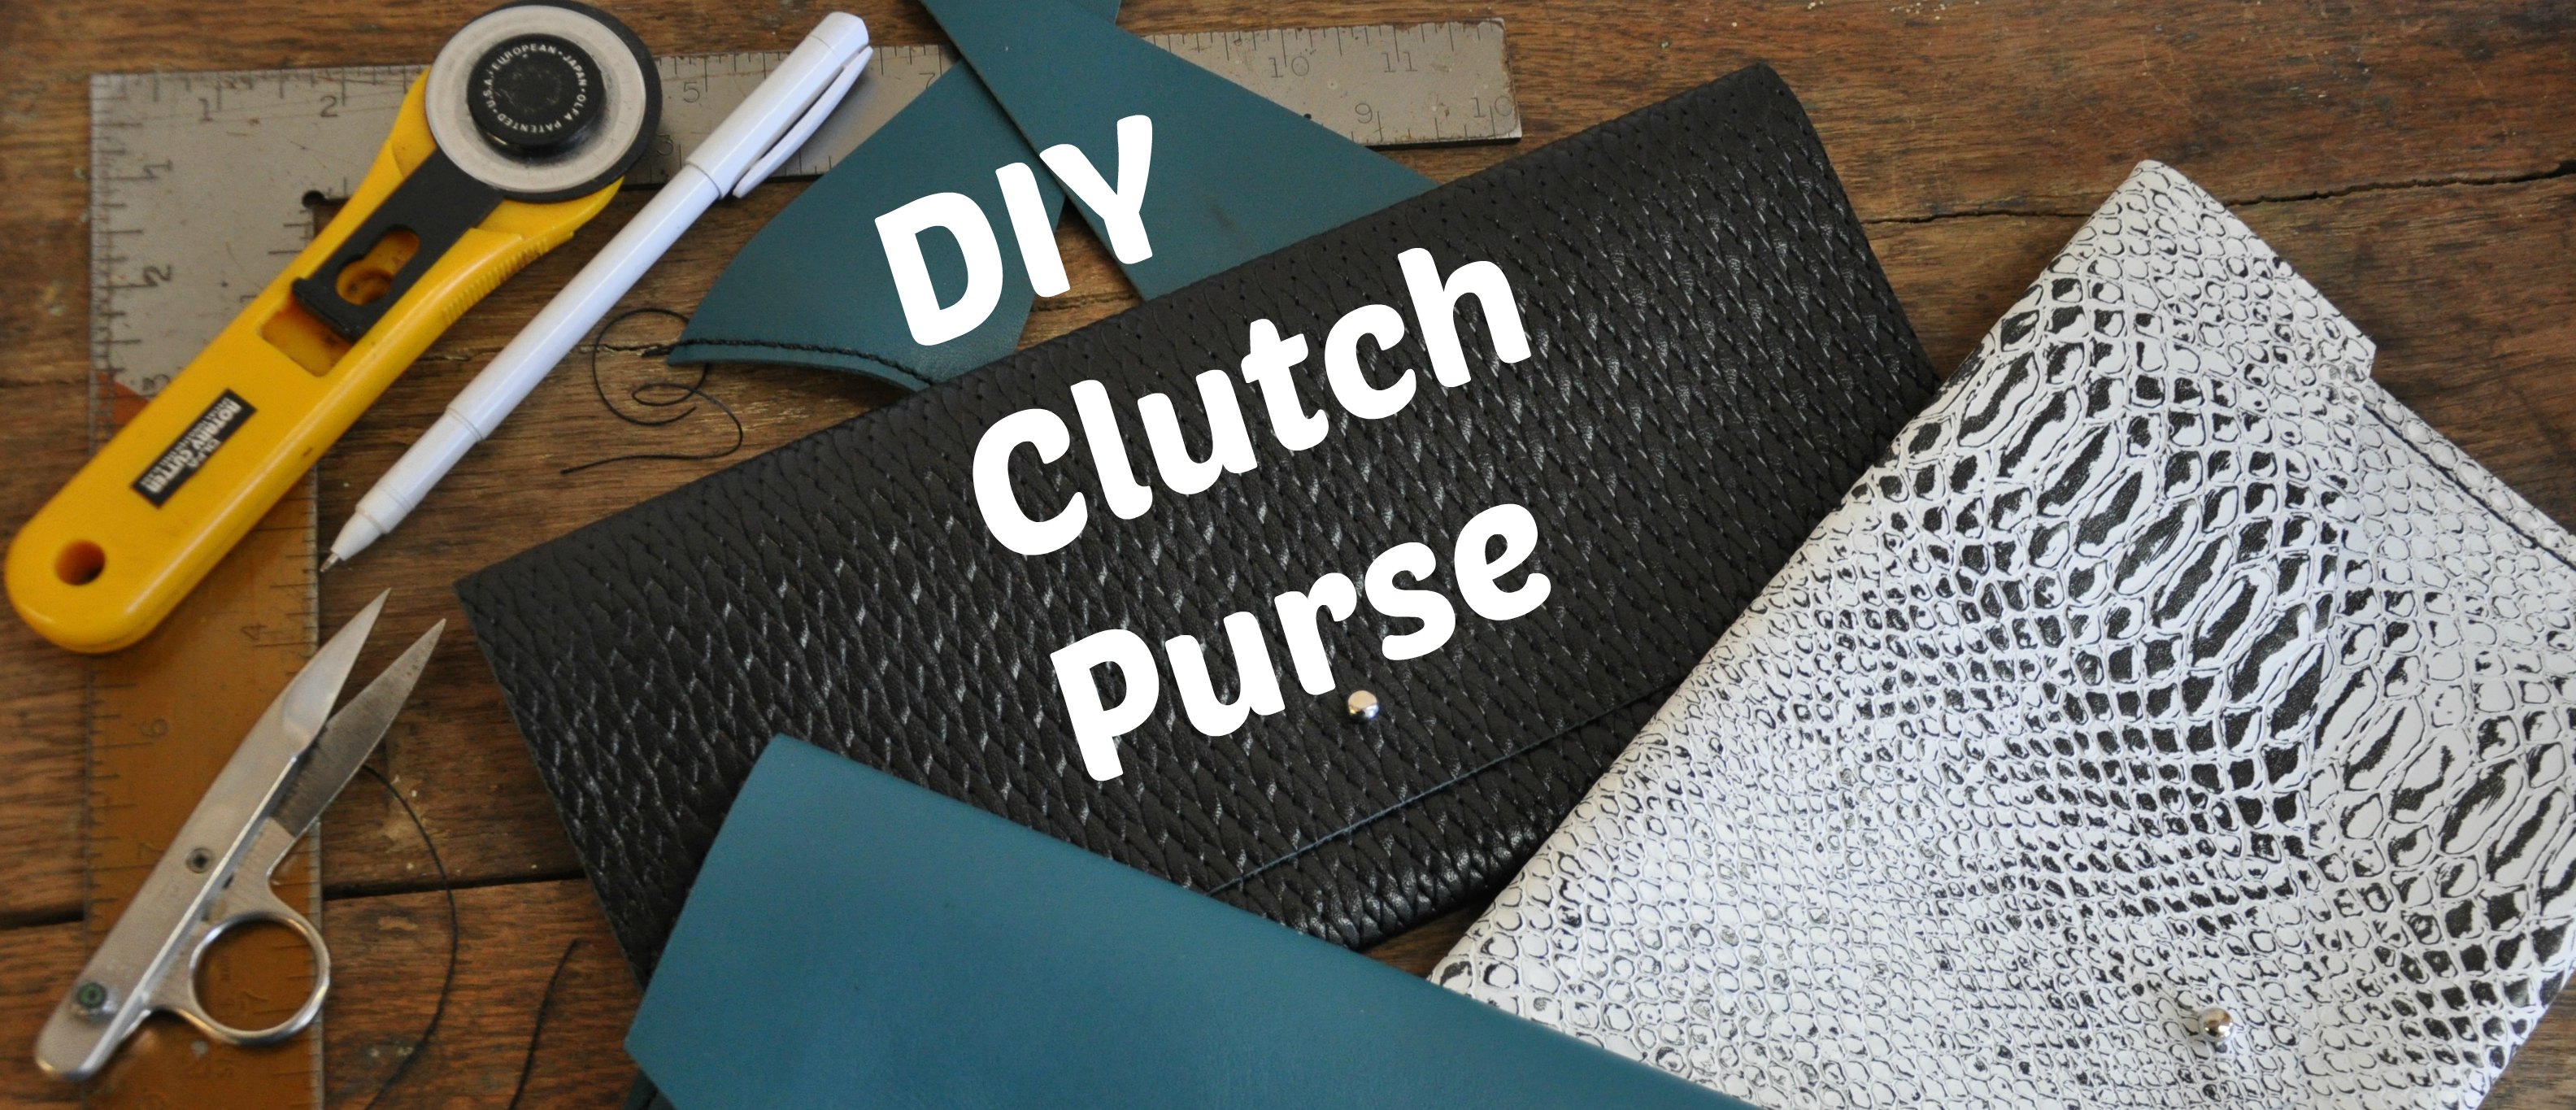 30 Free Crochet Clutch Bag Patterns - All Crochet Pattern